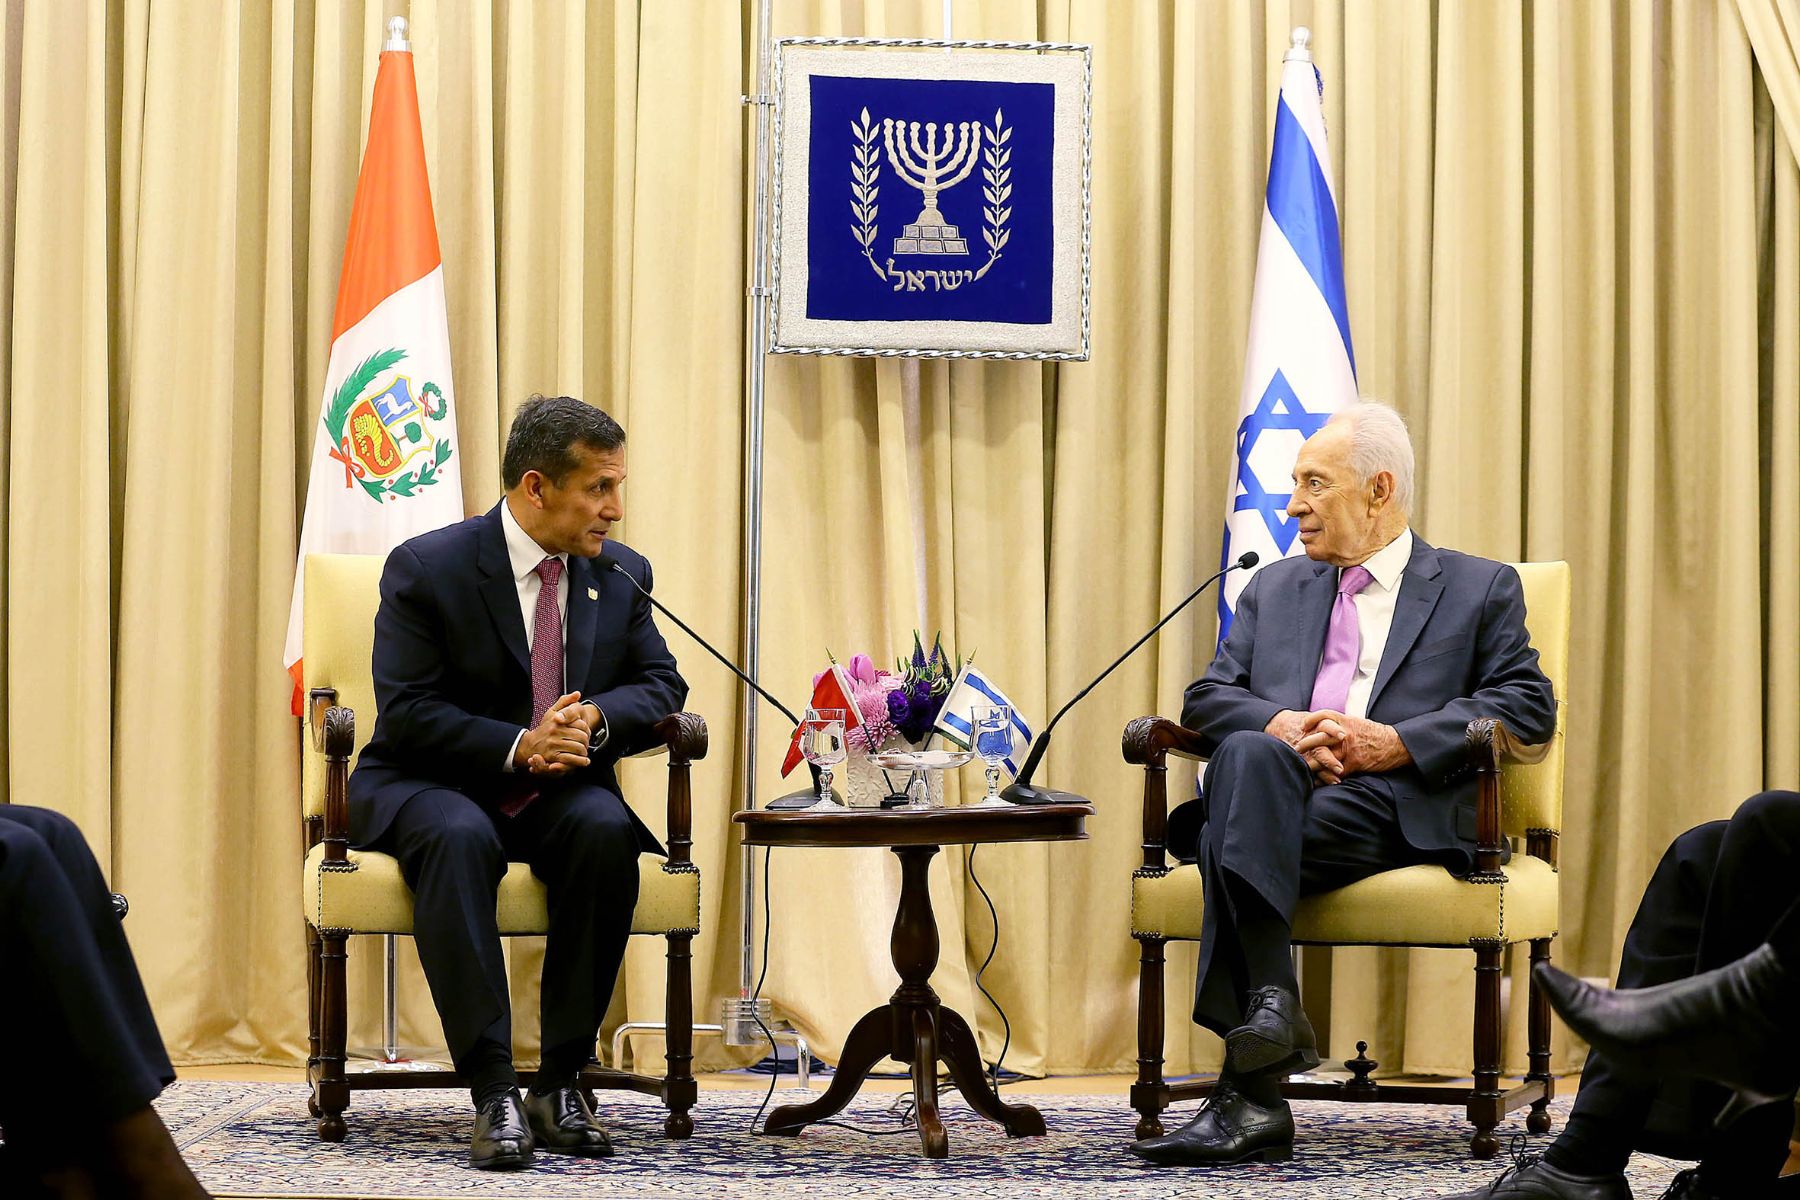 El presidente peruano, Ollanta Humala Tasso, se reunió hoy con su homólogo de Israel, Shimon Peres, en el inicio de una visita de Estado por Oriente Medio. Foto: ANDINA/Presidencia.